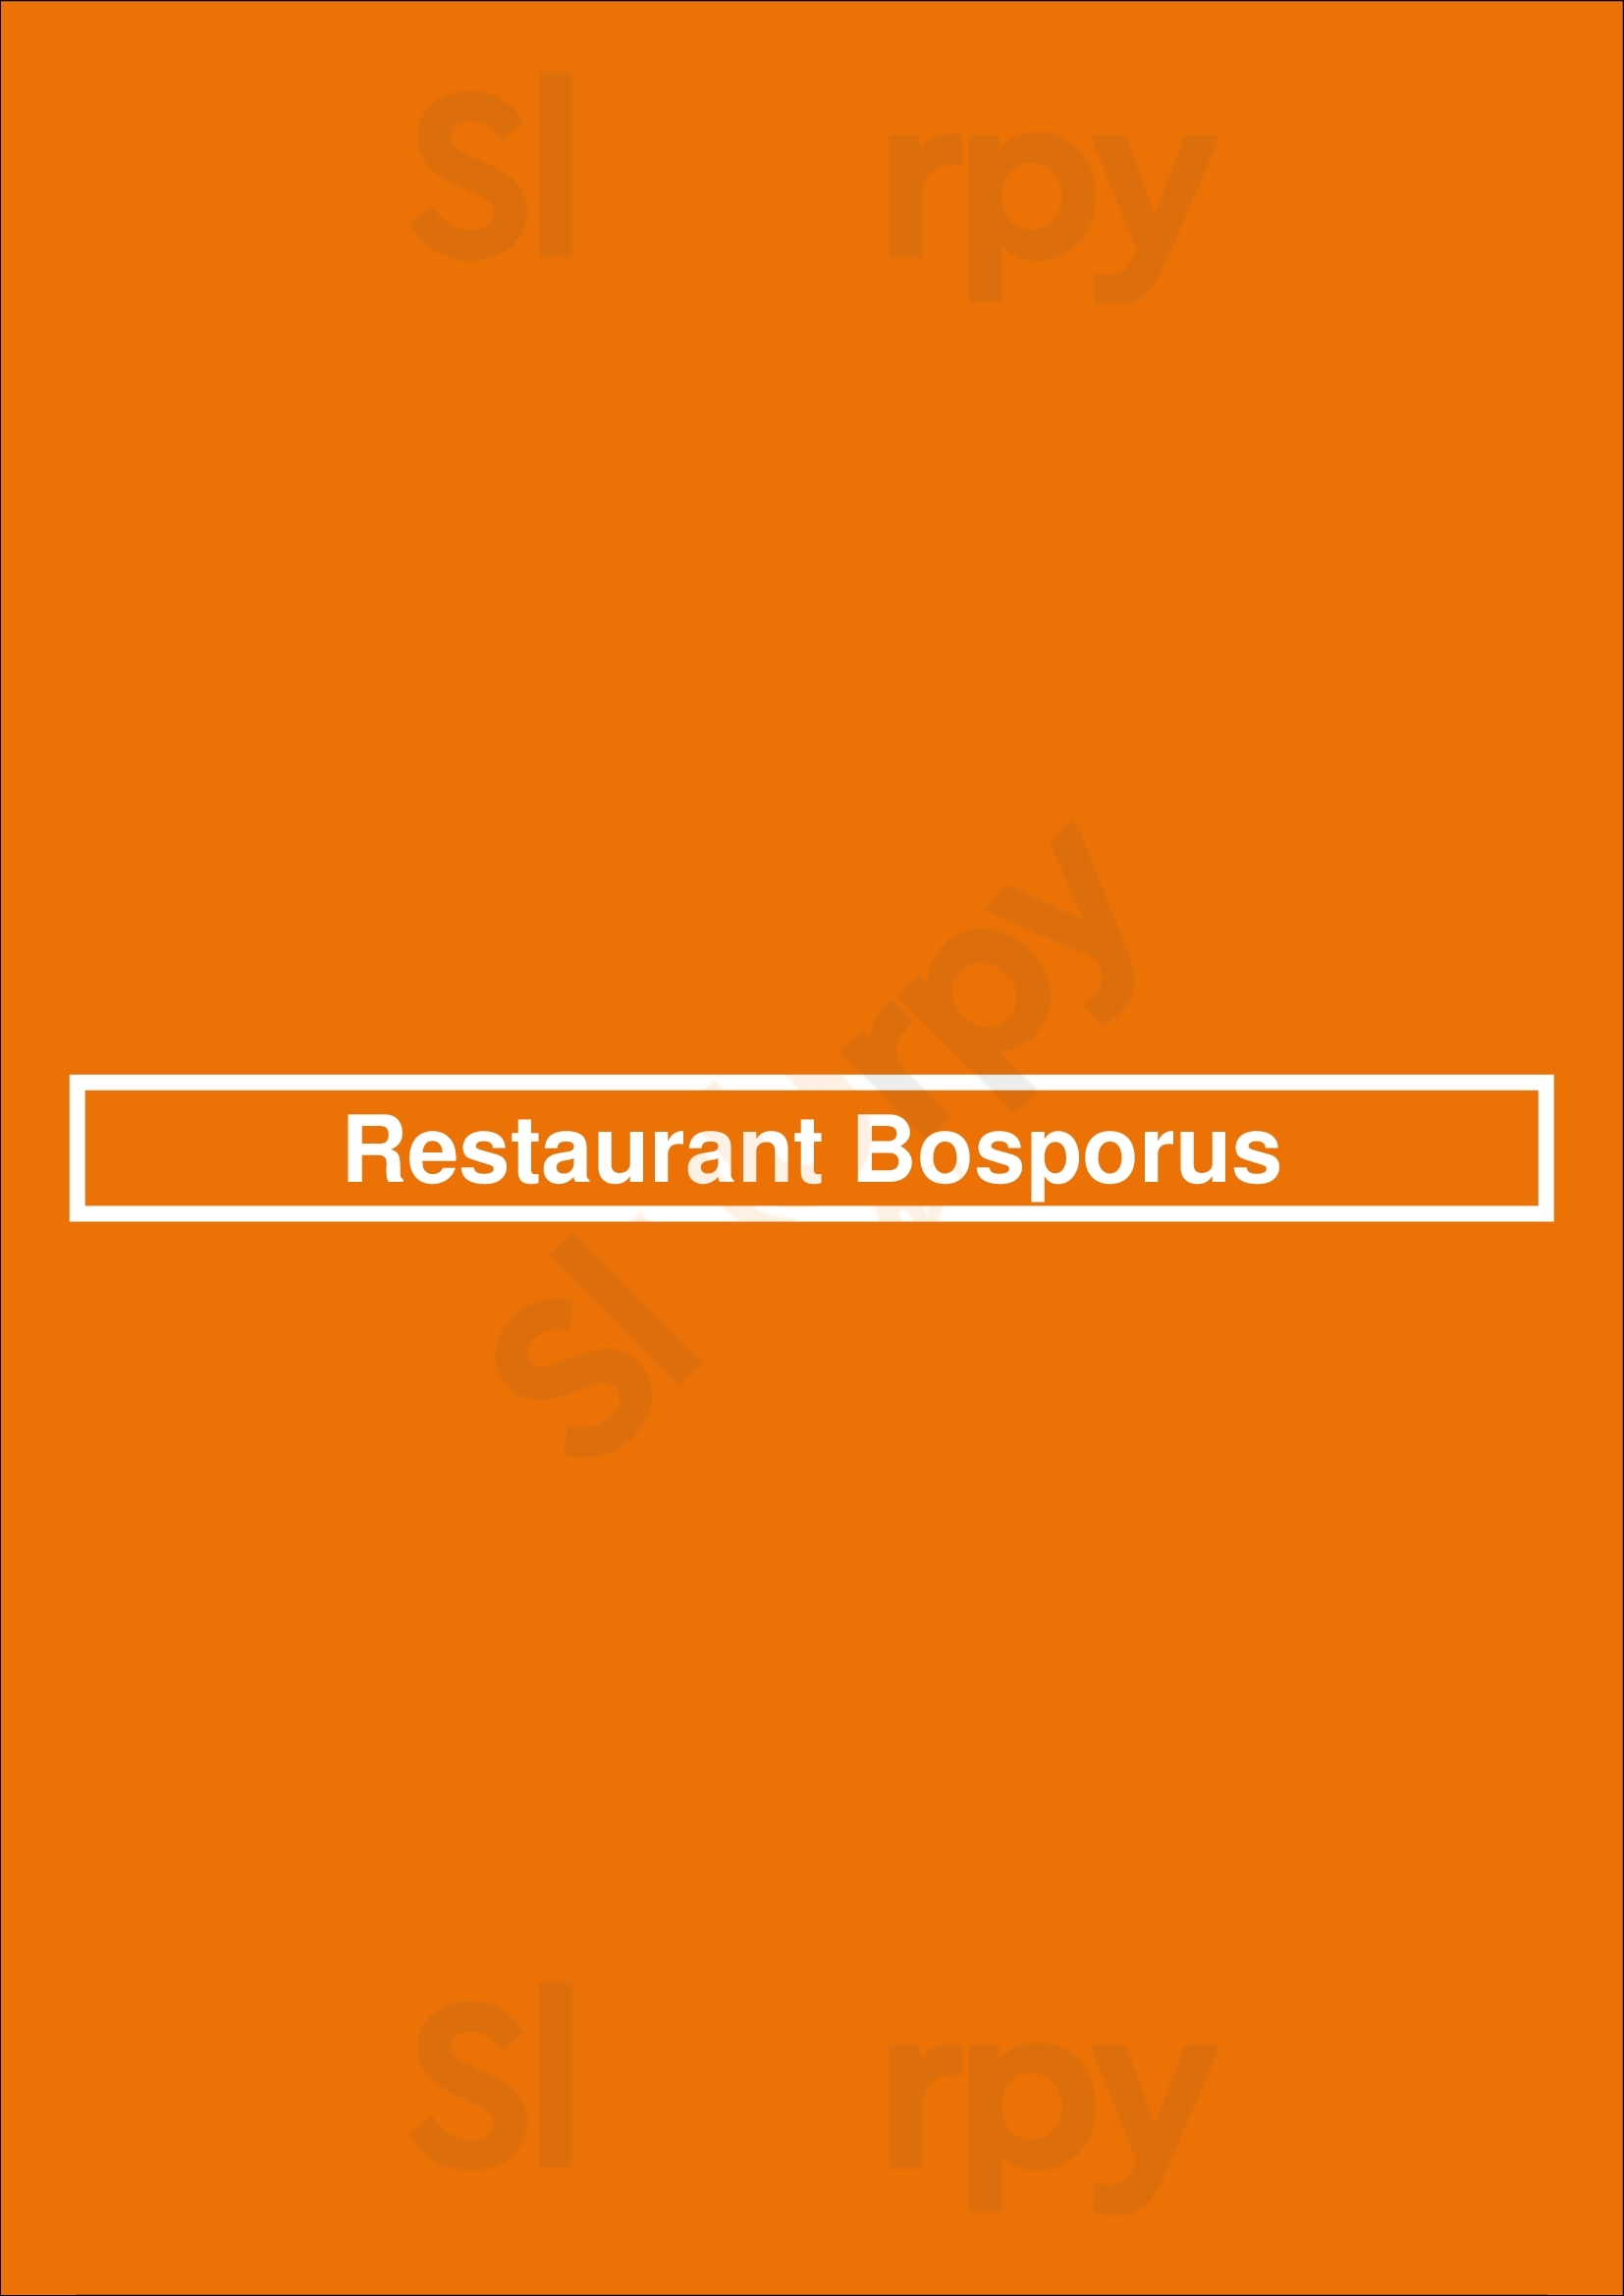 Restaurant Bosporus Leeuwarden Menu - 1